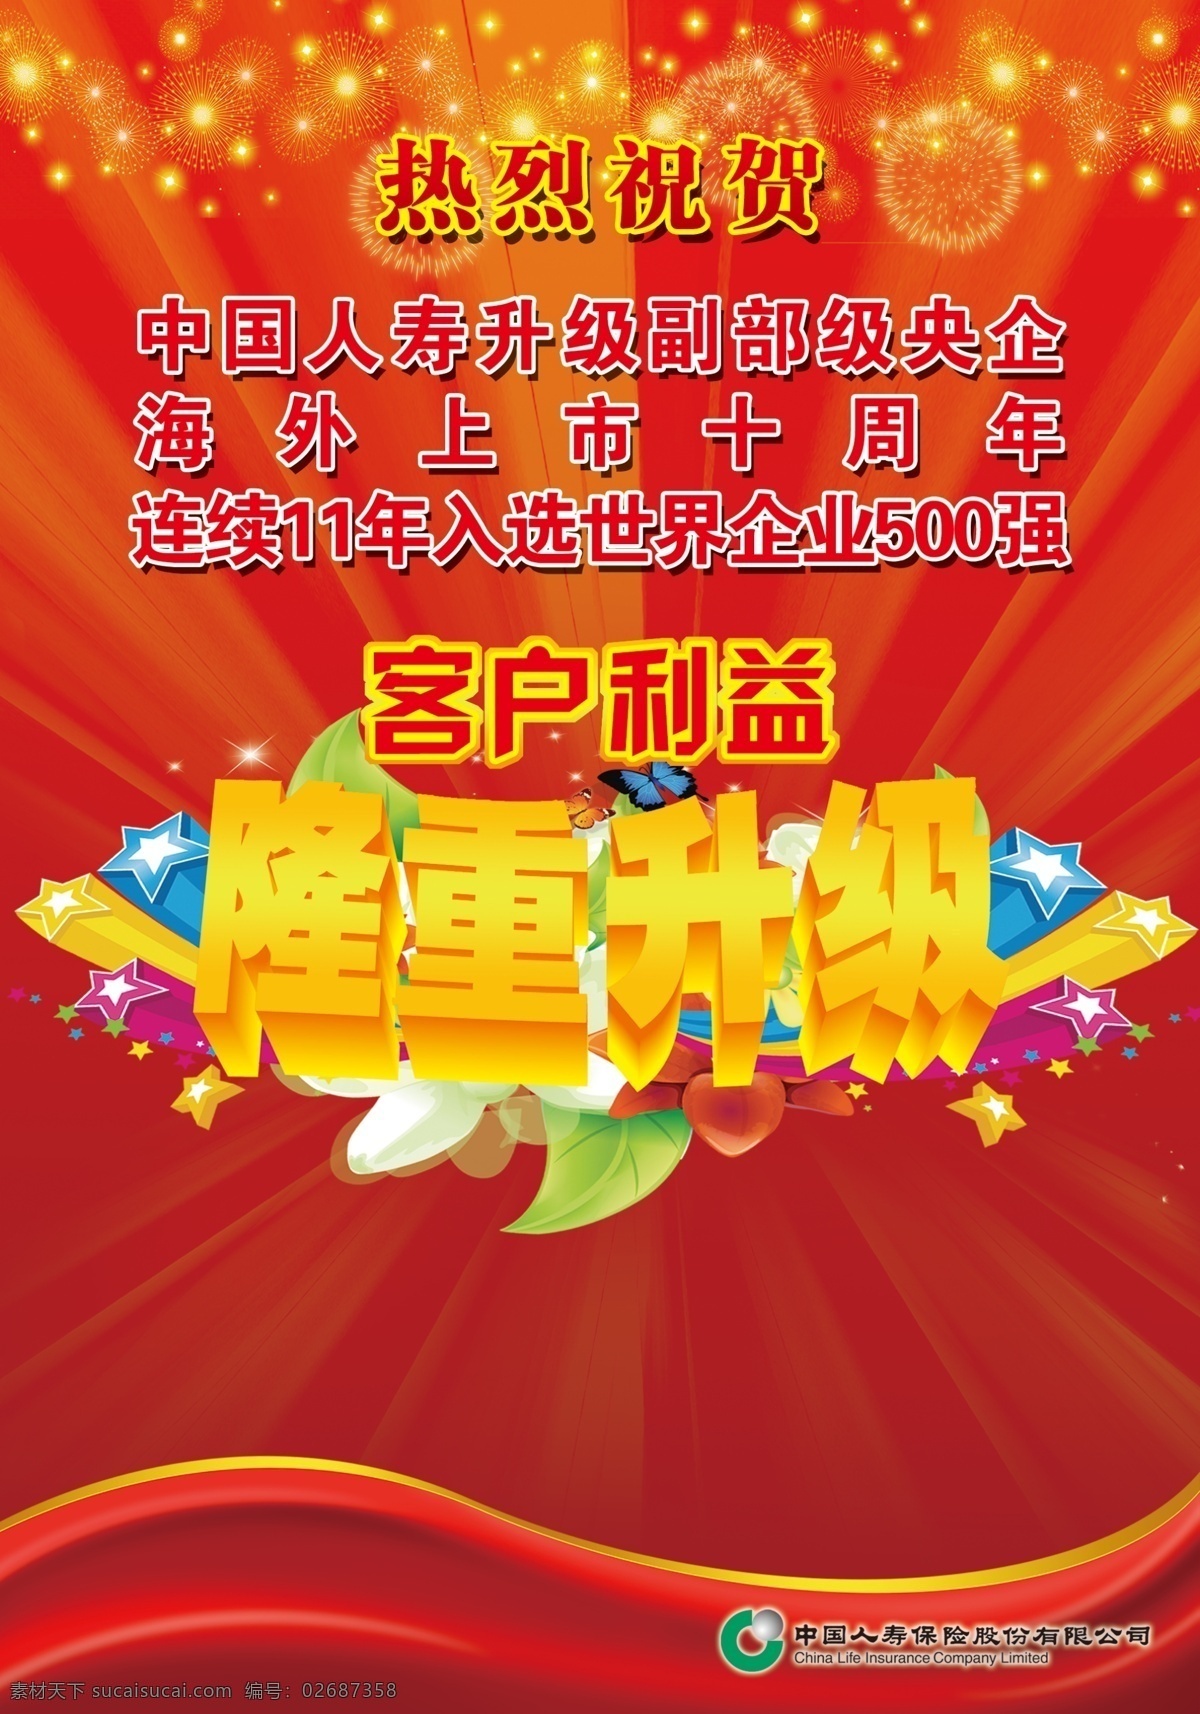 中国人寿 隆重升级 客户利益 红色背景 烟花 散射光 发散光 中国人寿保险 海外 上市 十 周年 500强 广告设计模板 源文件